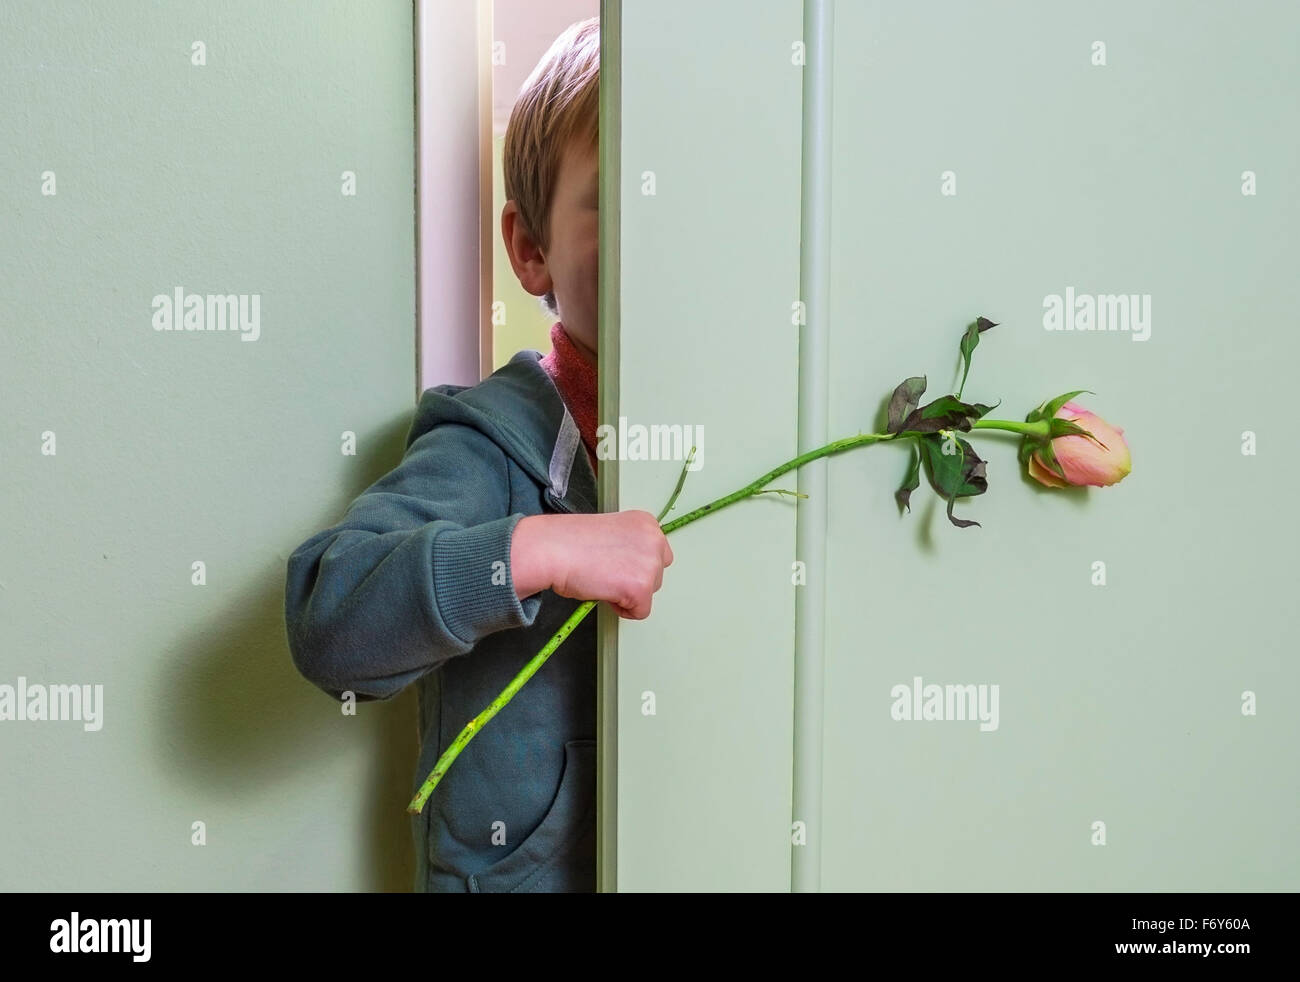 kleines Kind versteckt sich hinter der Tür und hält eine Blume Stockfoto